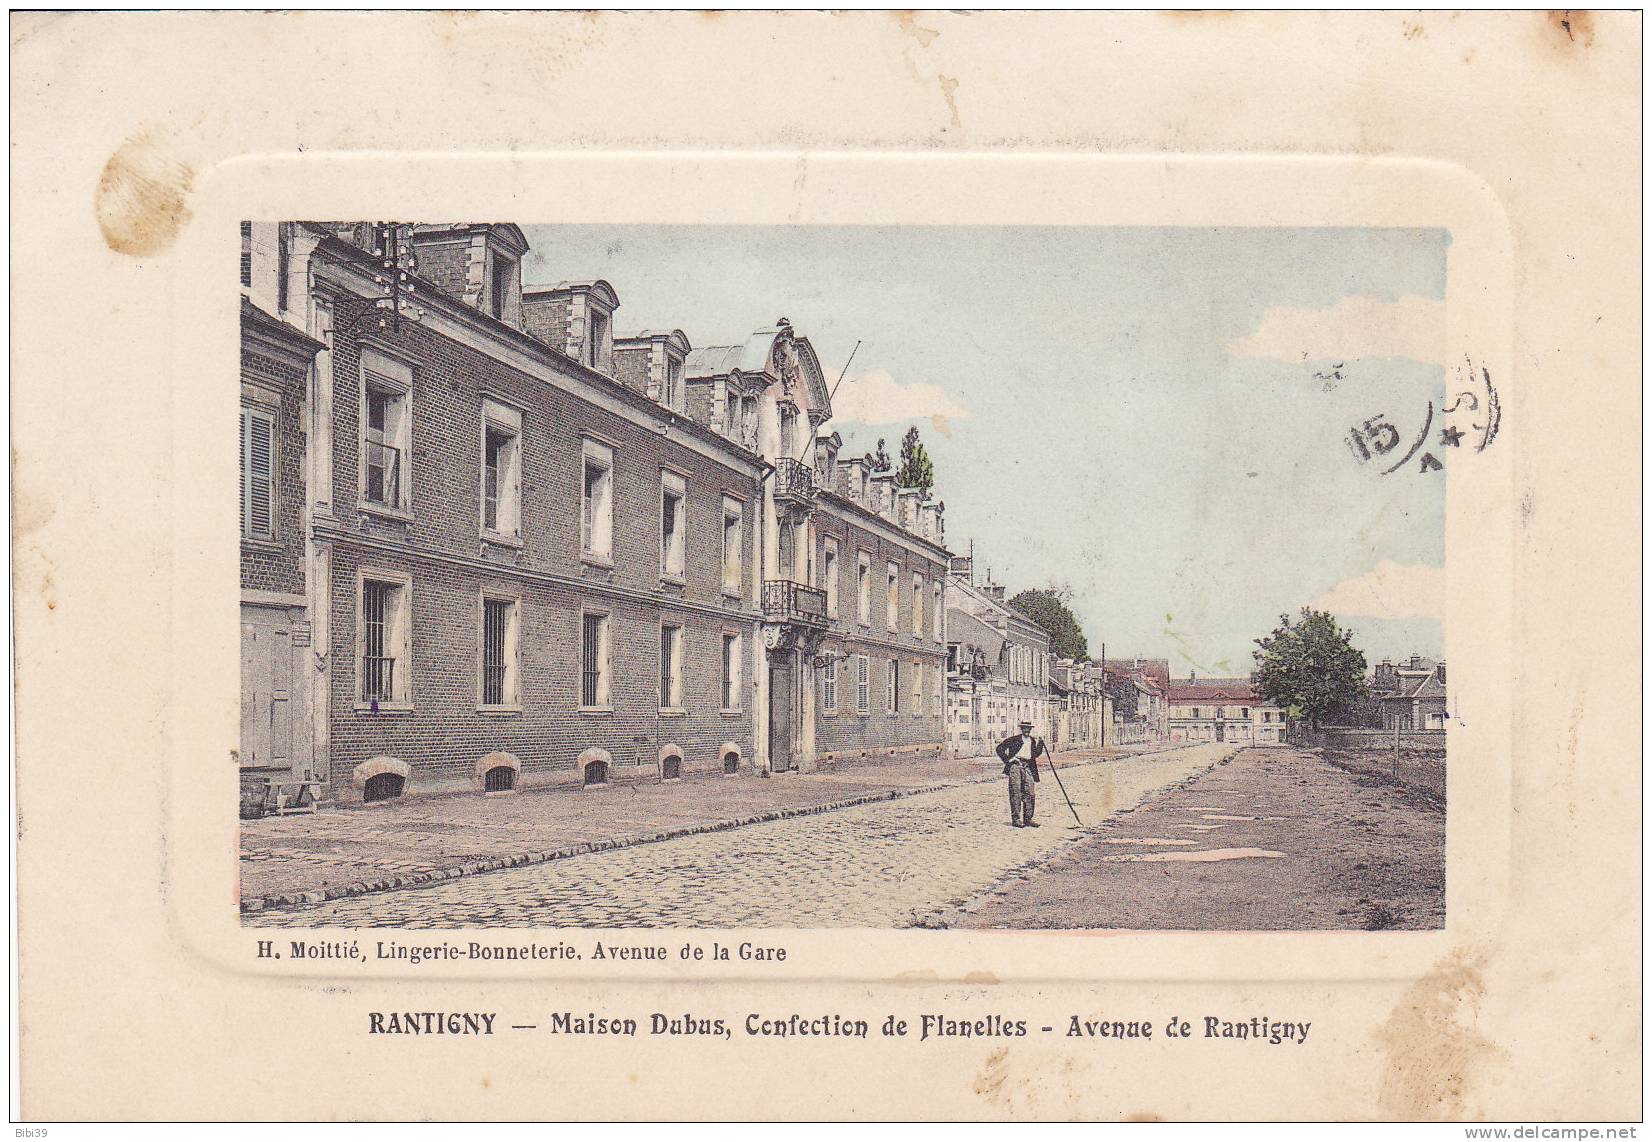 RANTIGNY.  _  Maison Dubus, Confection De Flanelles  _  Avenue De Rantigny. H. Moitié, Lingerie-Bonneterie, Avenue De La - Rantigny